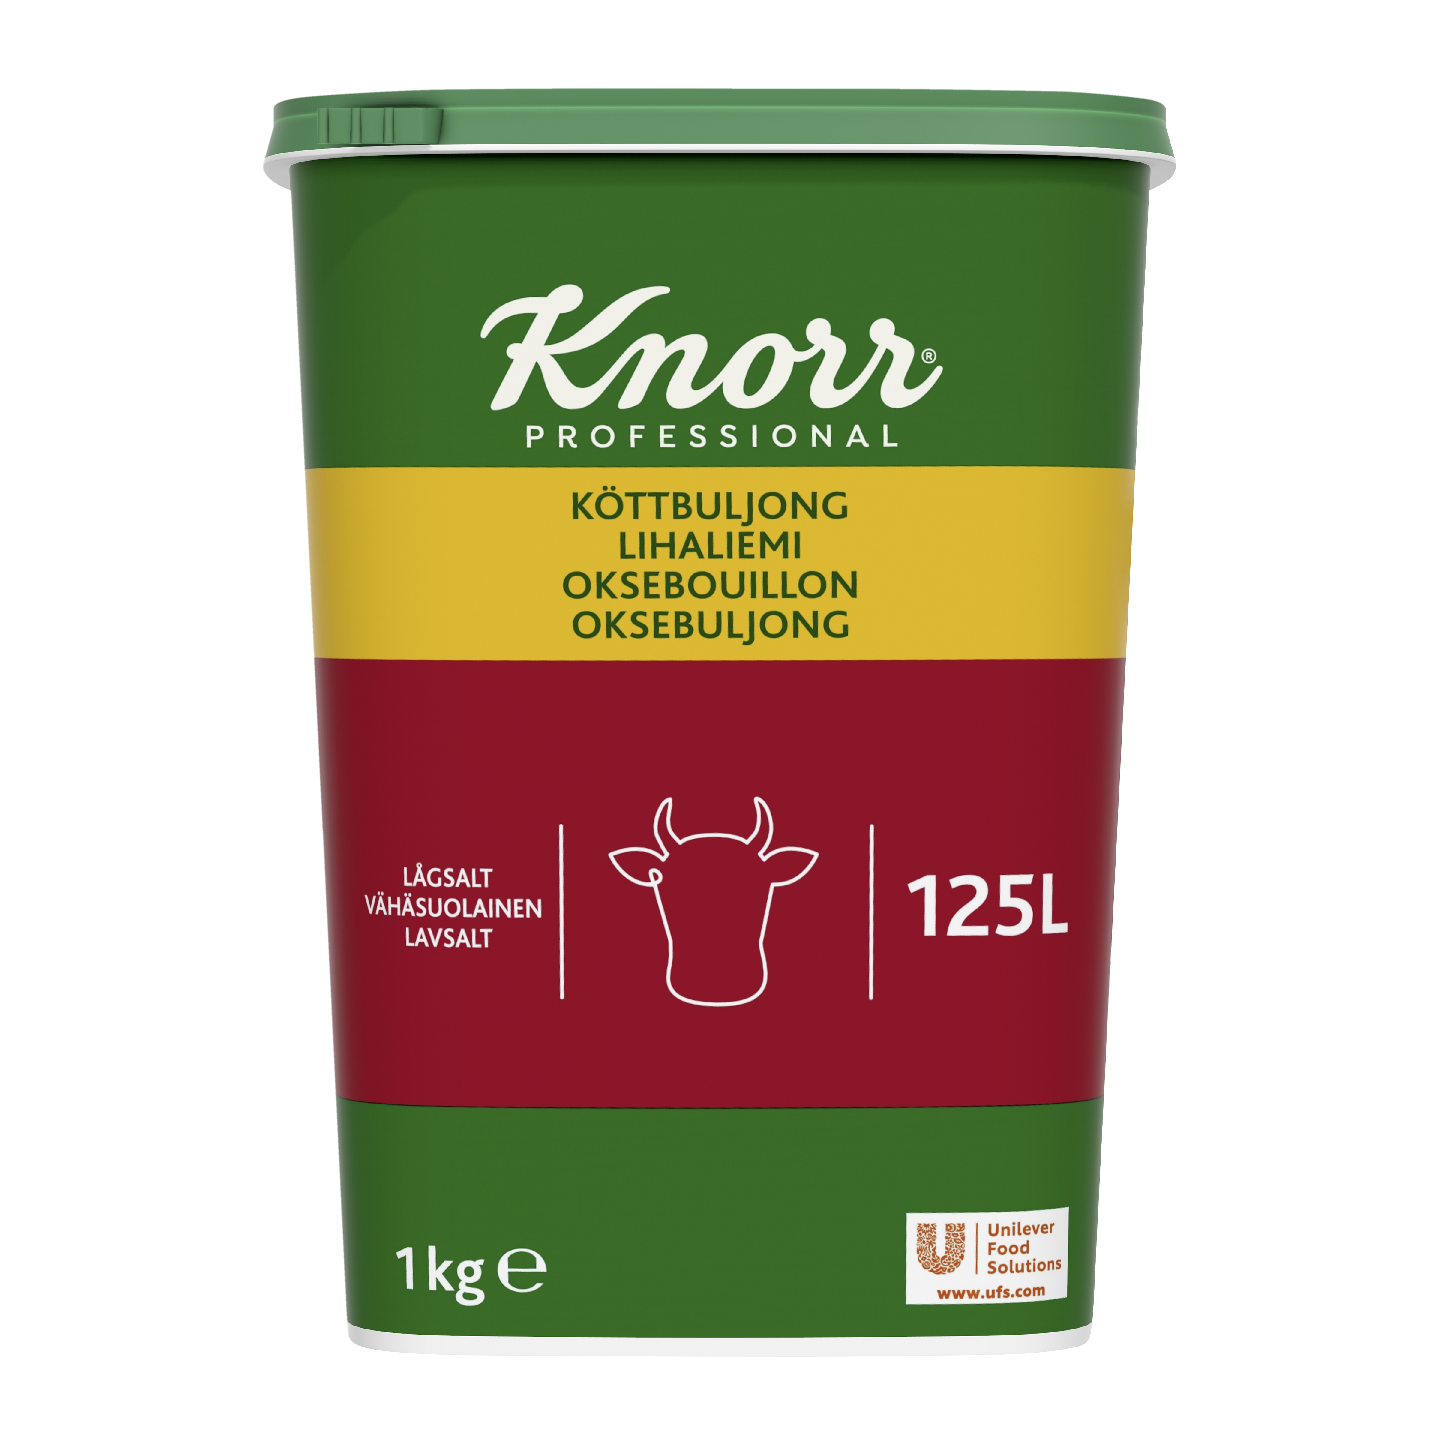 Knorr Lihaliemijauhe vähäsuolainen 1kg/125l